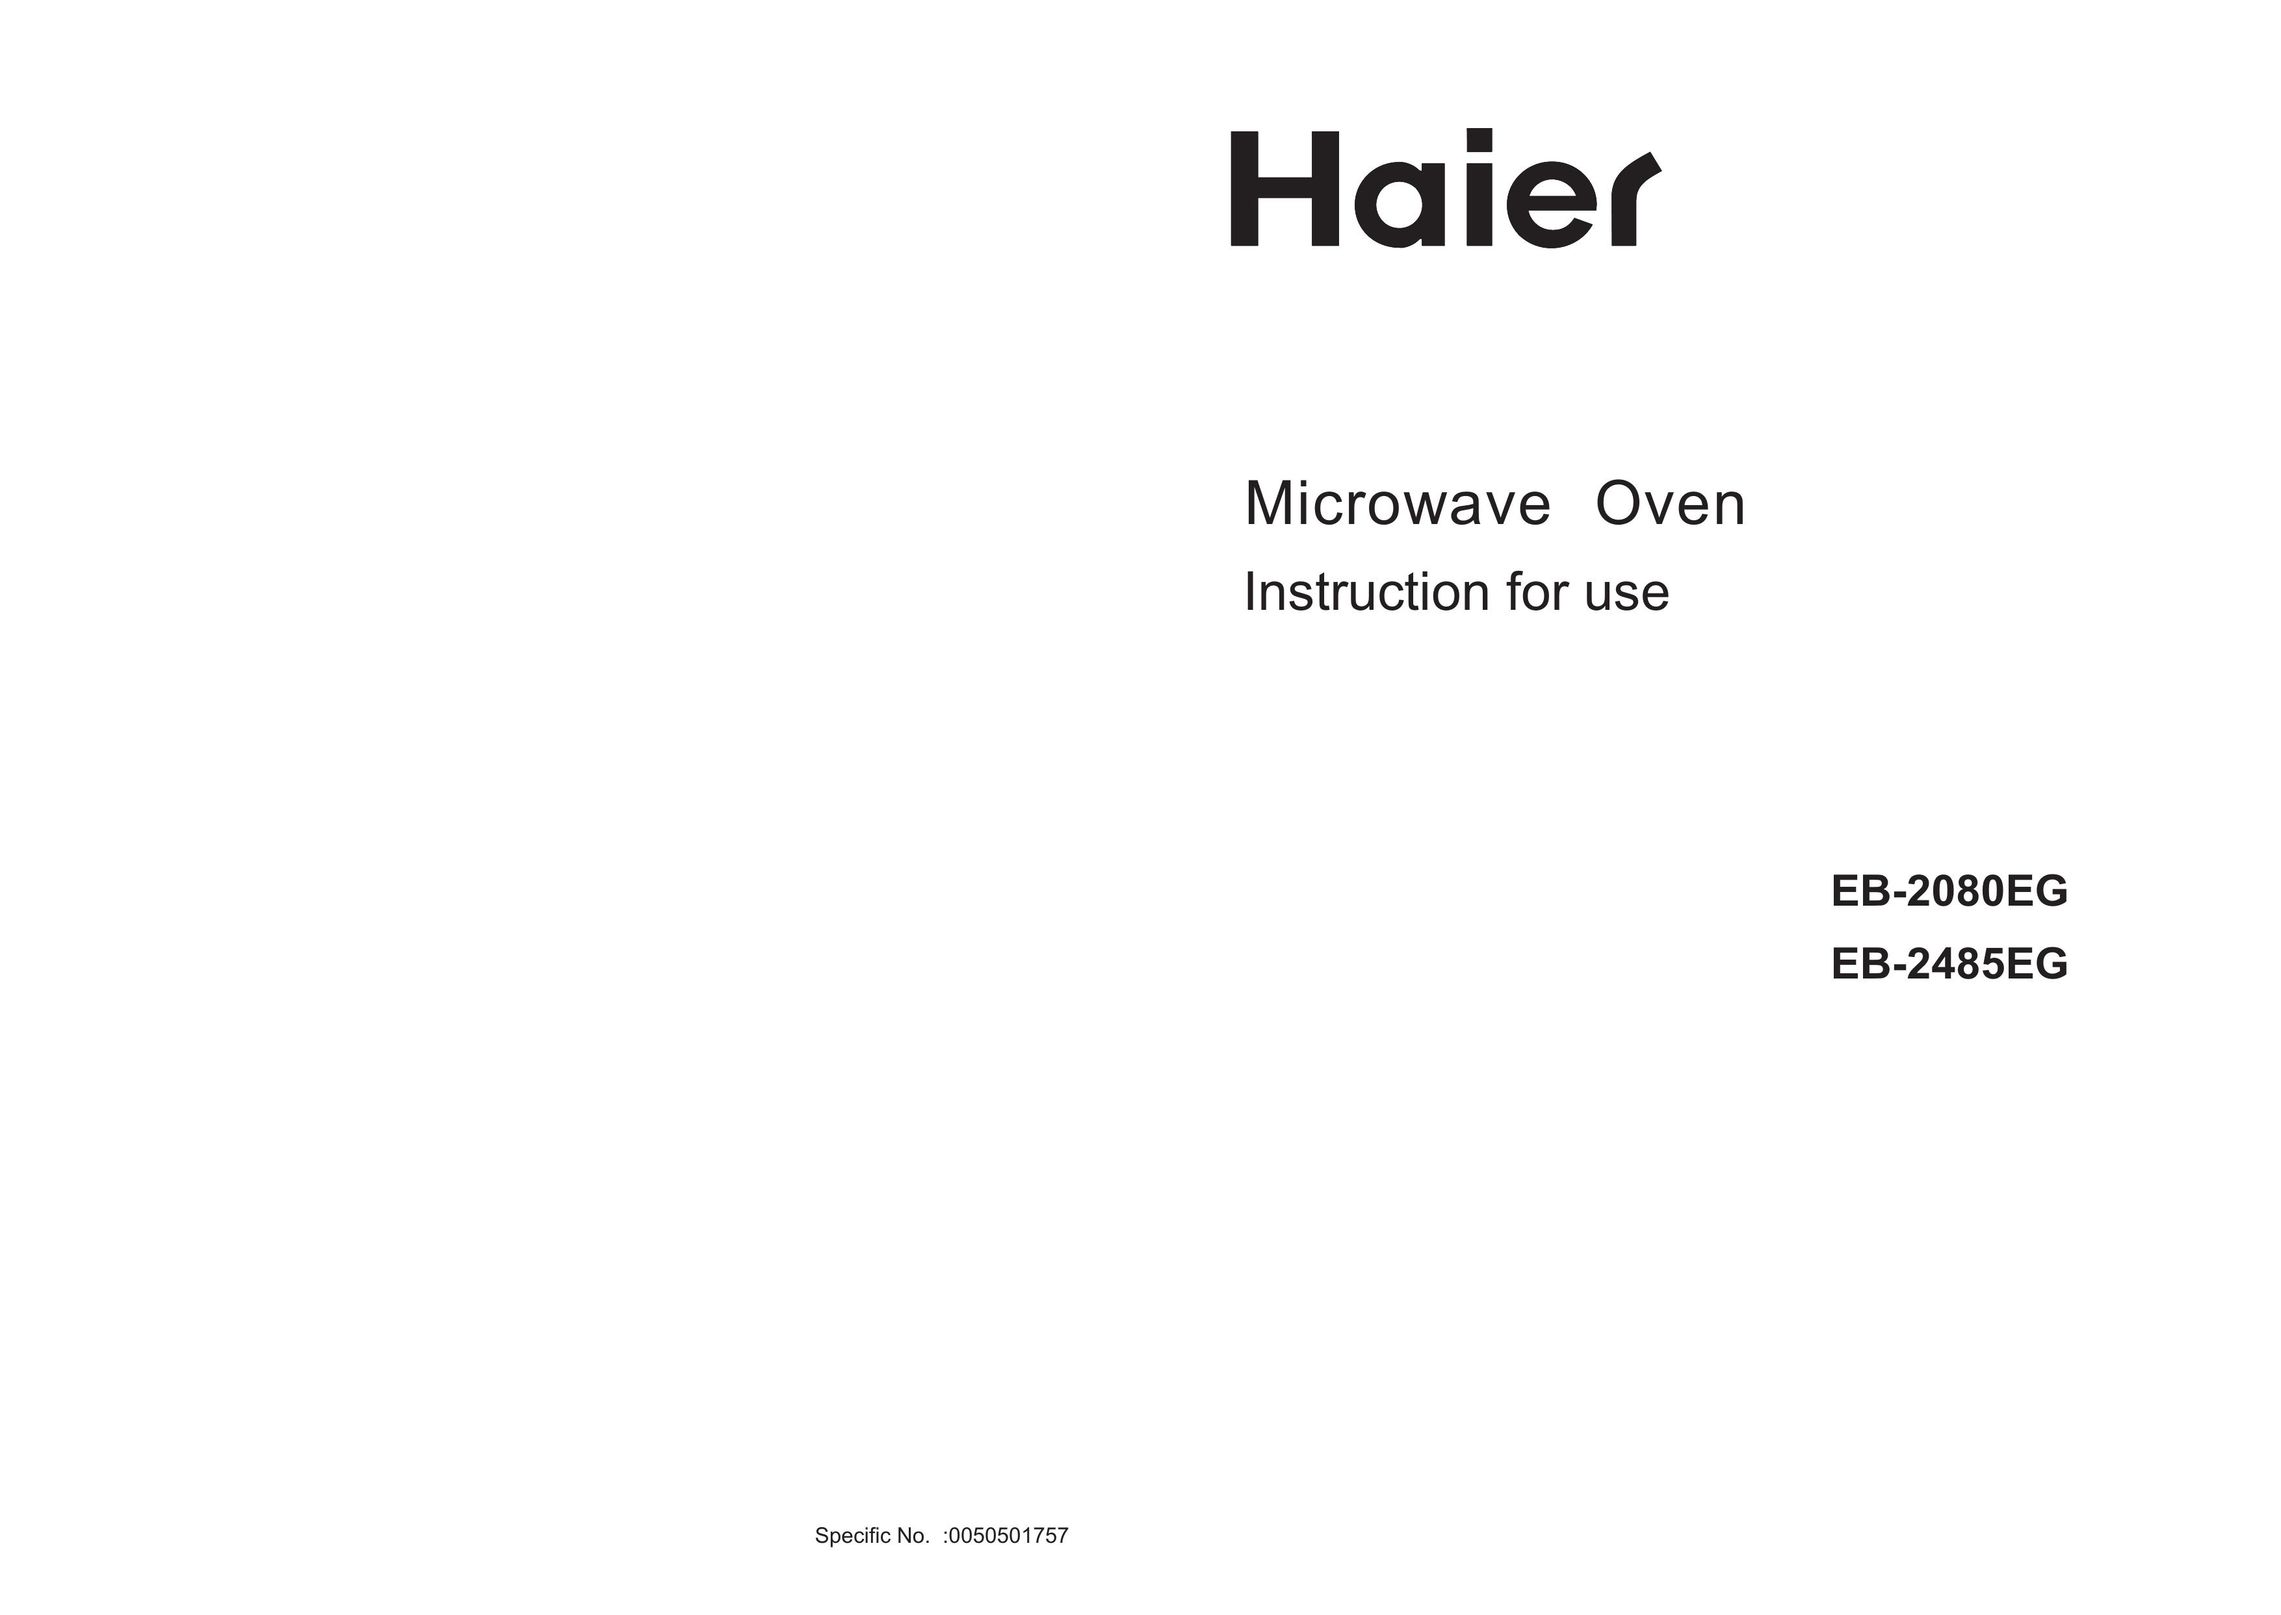 Haier EB-2485EG Microwave Oven User Manual